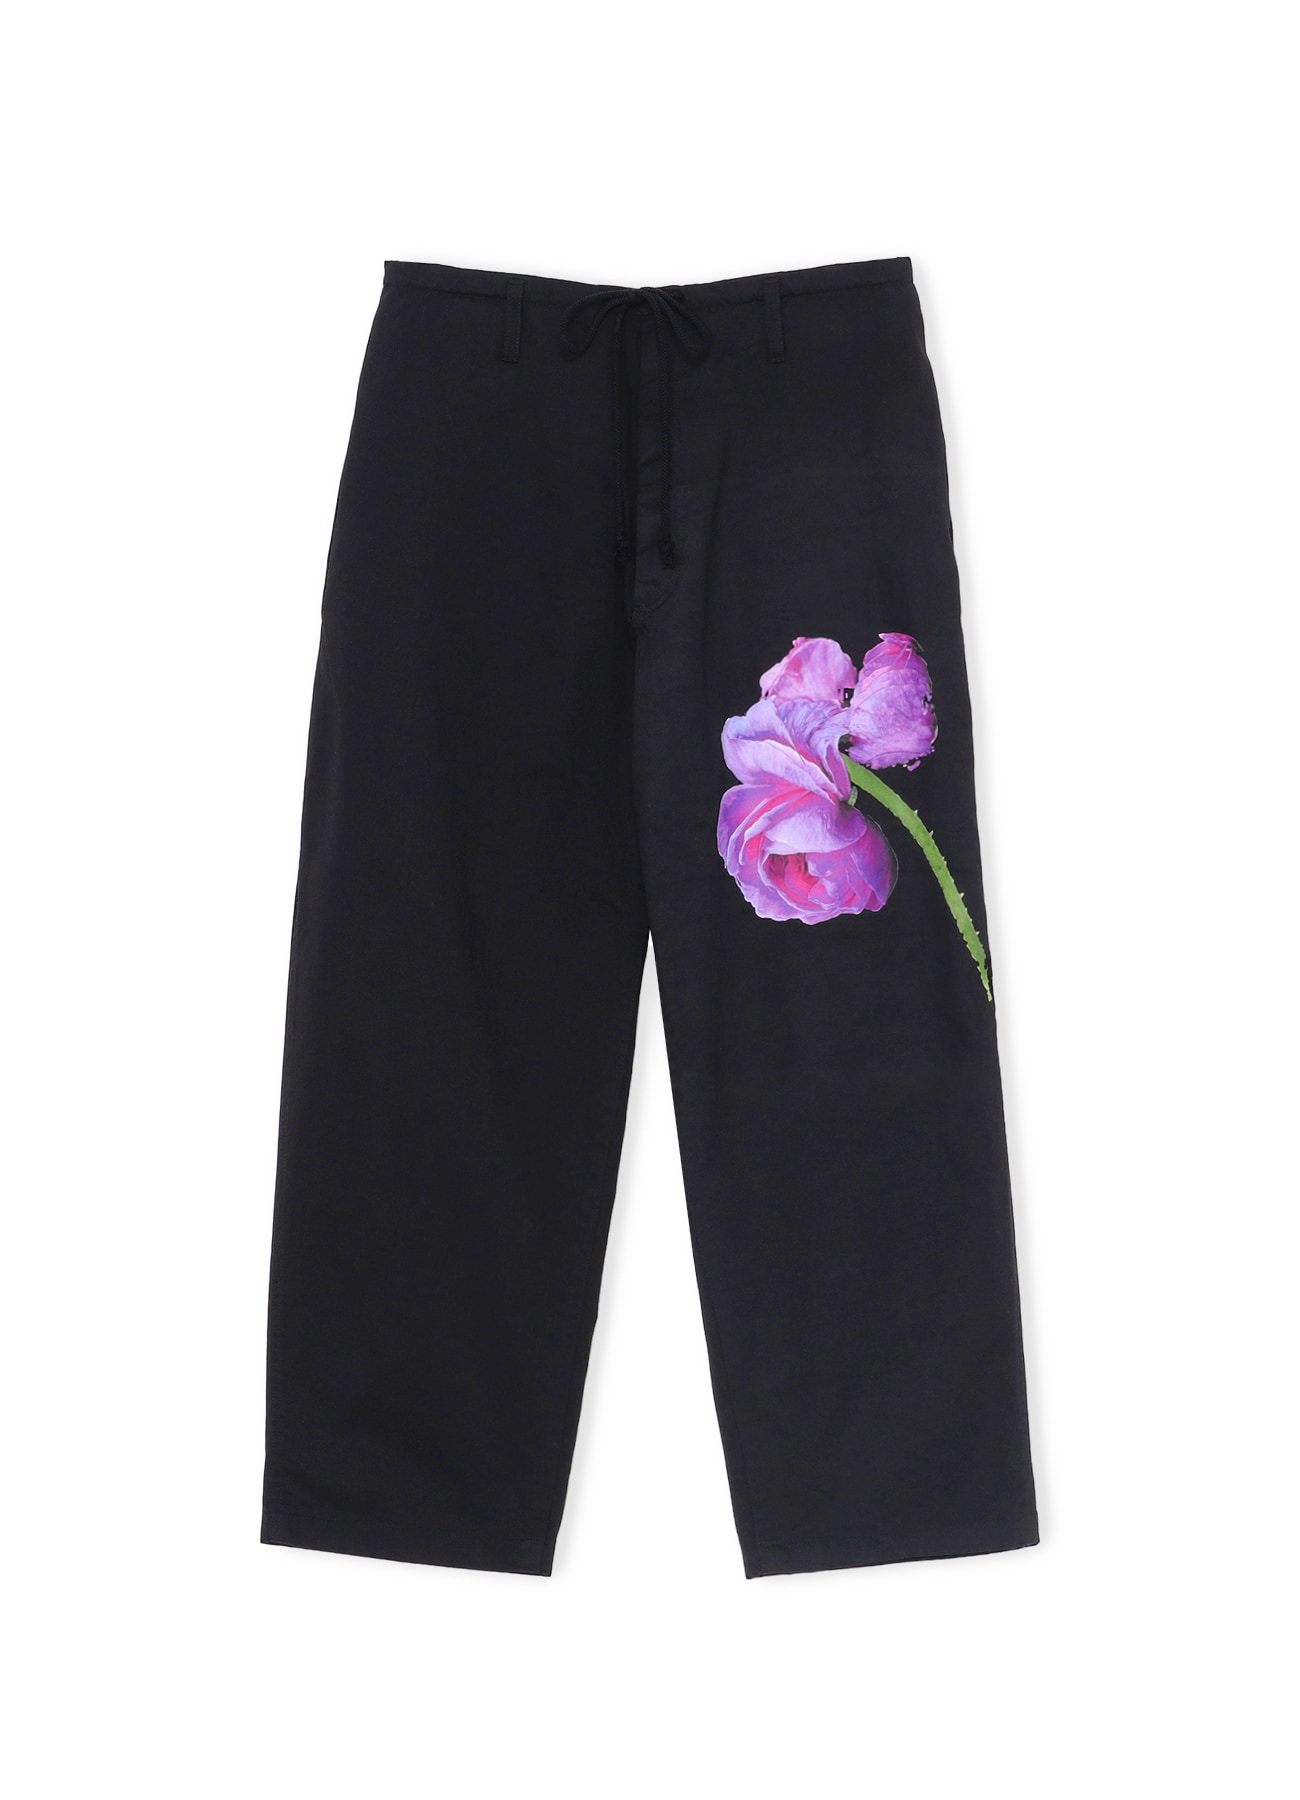 Cotton Chino PURPLE ROSE Pants(M BLACK): YOHJI YAMAMOTO｜WILDSIDE YOHJI  YAMAMOTO（ワイルドサイド）【公式通販】